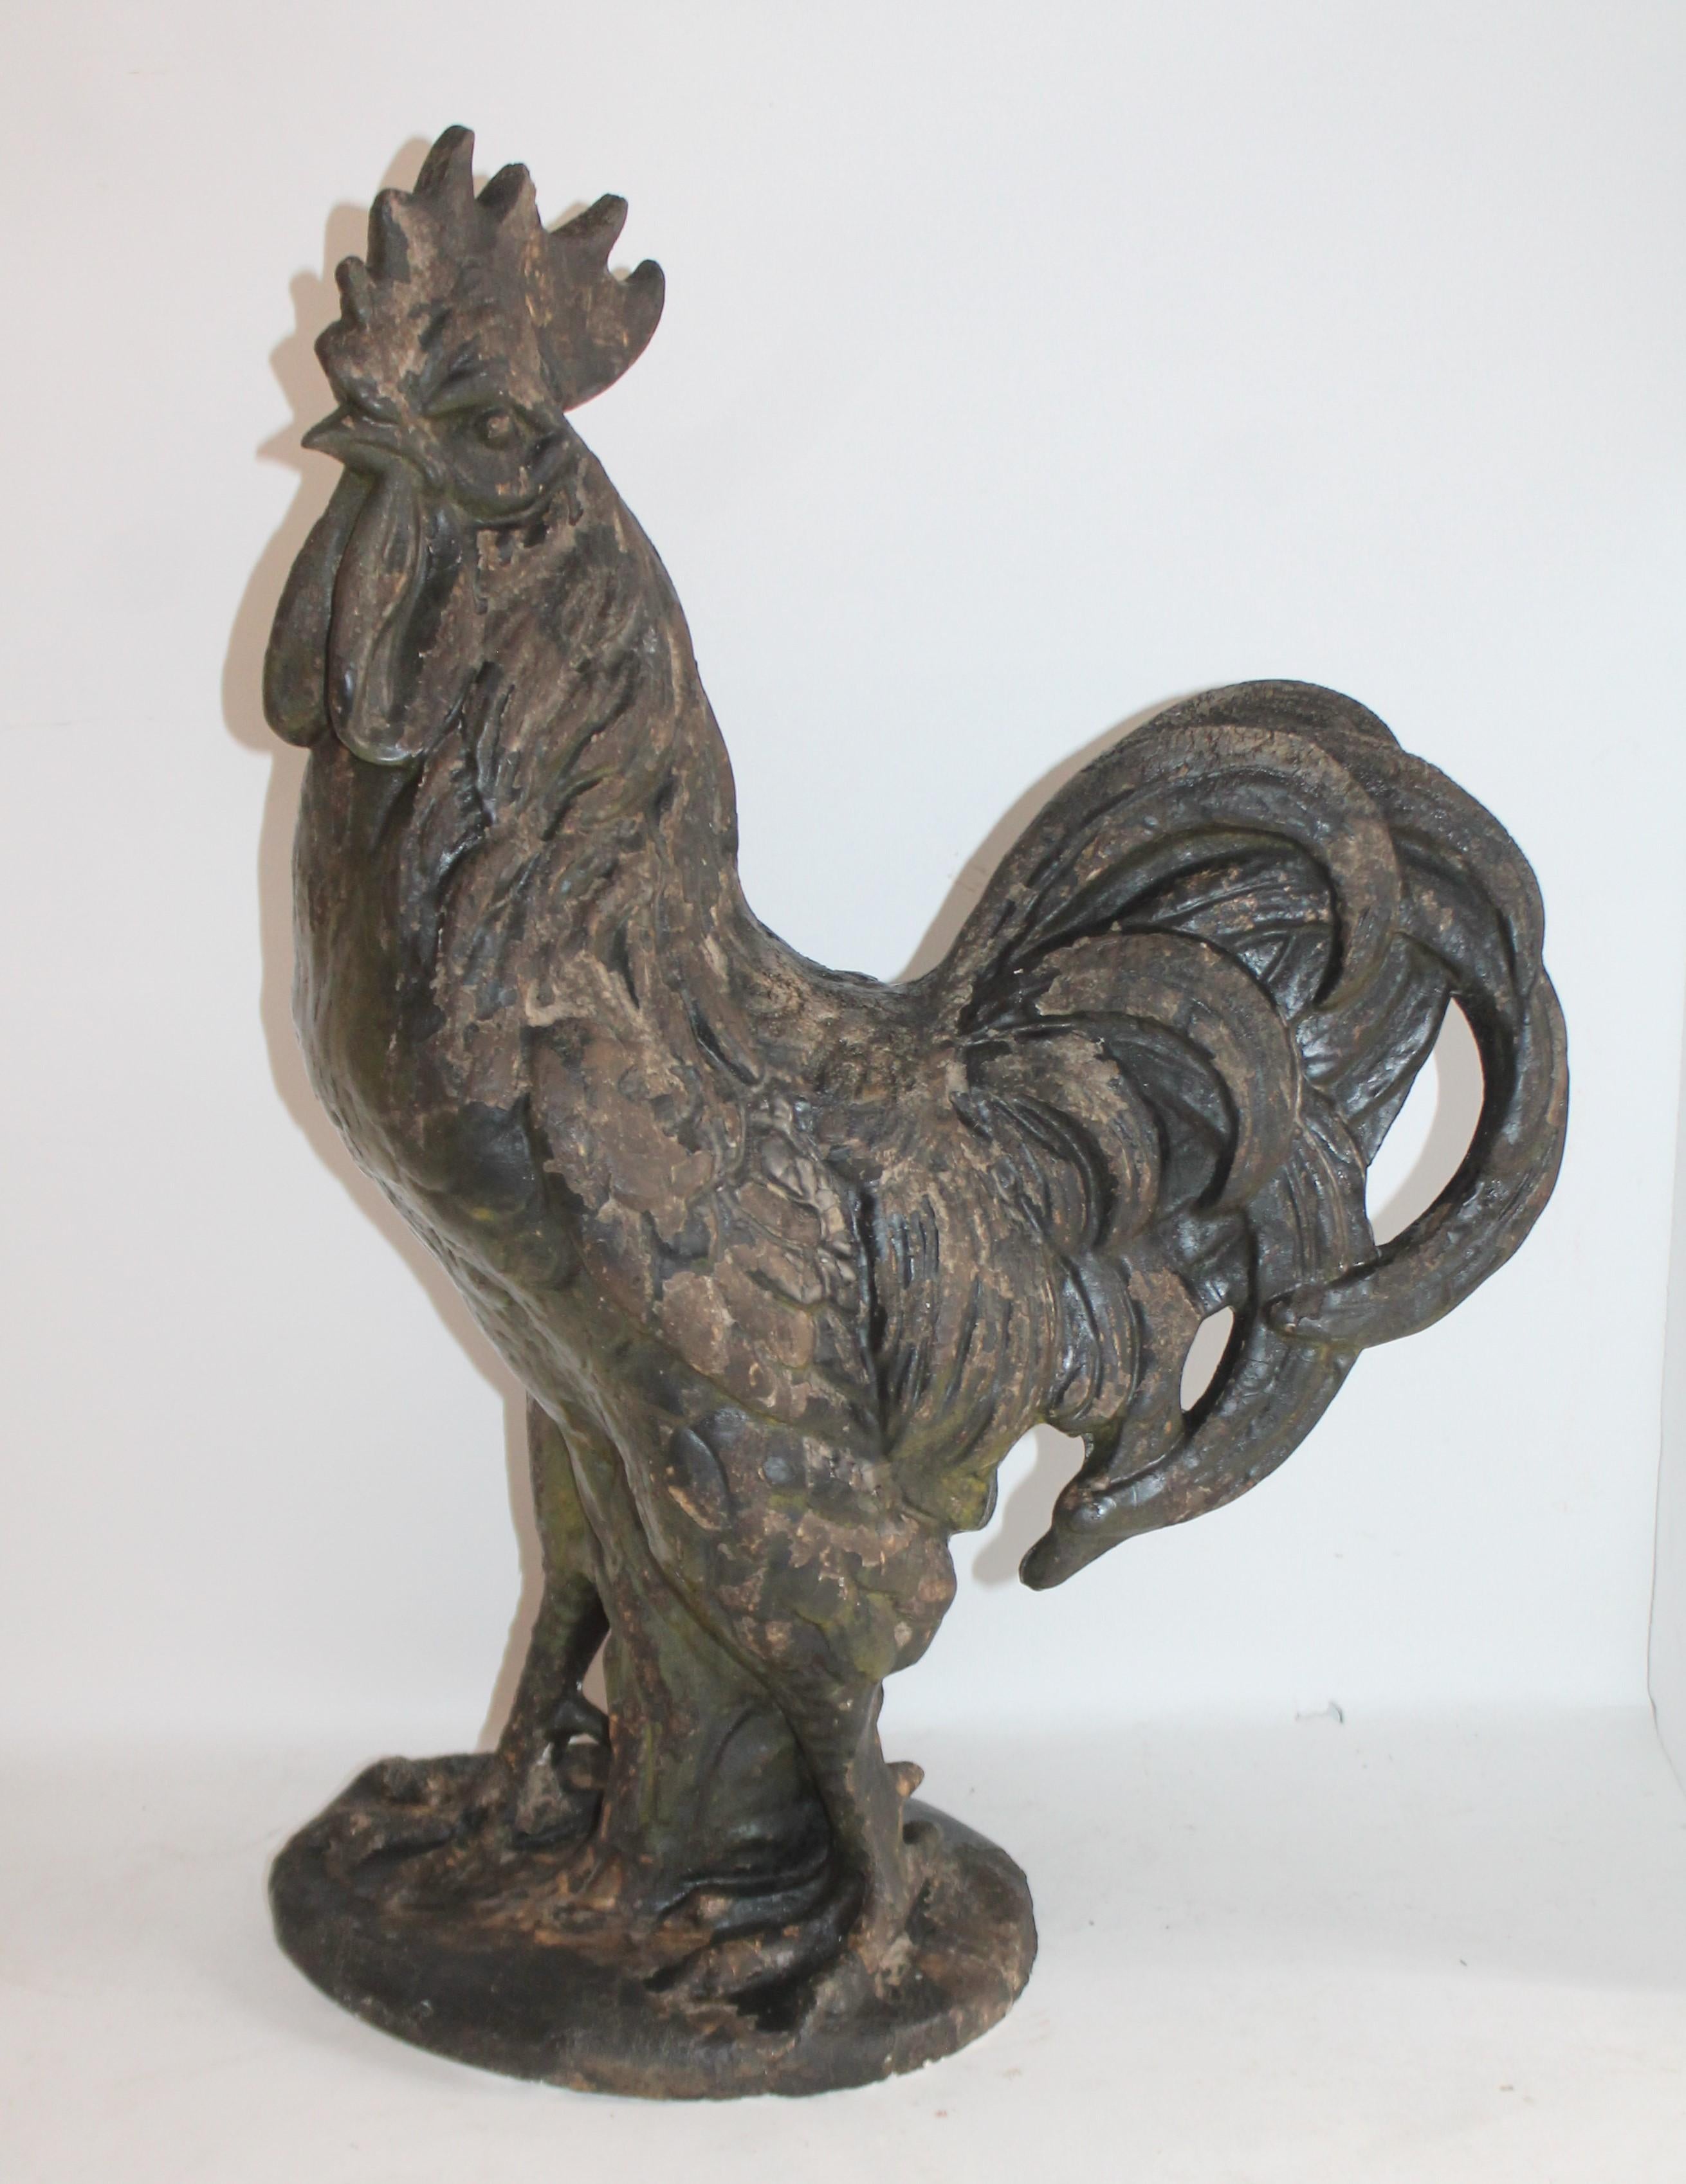 Dieser volkstümliche Hahn ist aus Gips oder Keramik gefertigt und eignet sich hervorragend für eine Veranda oder einen Hof. Es handelt sich um einen schweren, notdürftig bemalten Hahn.